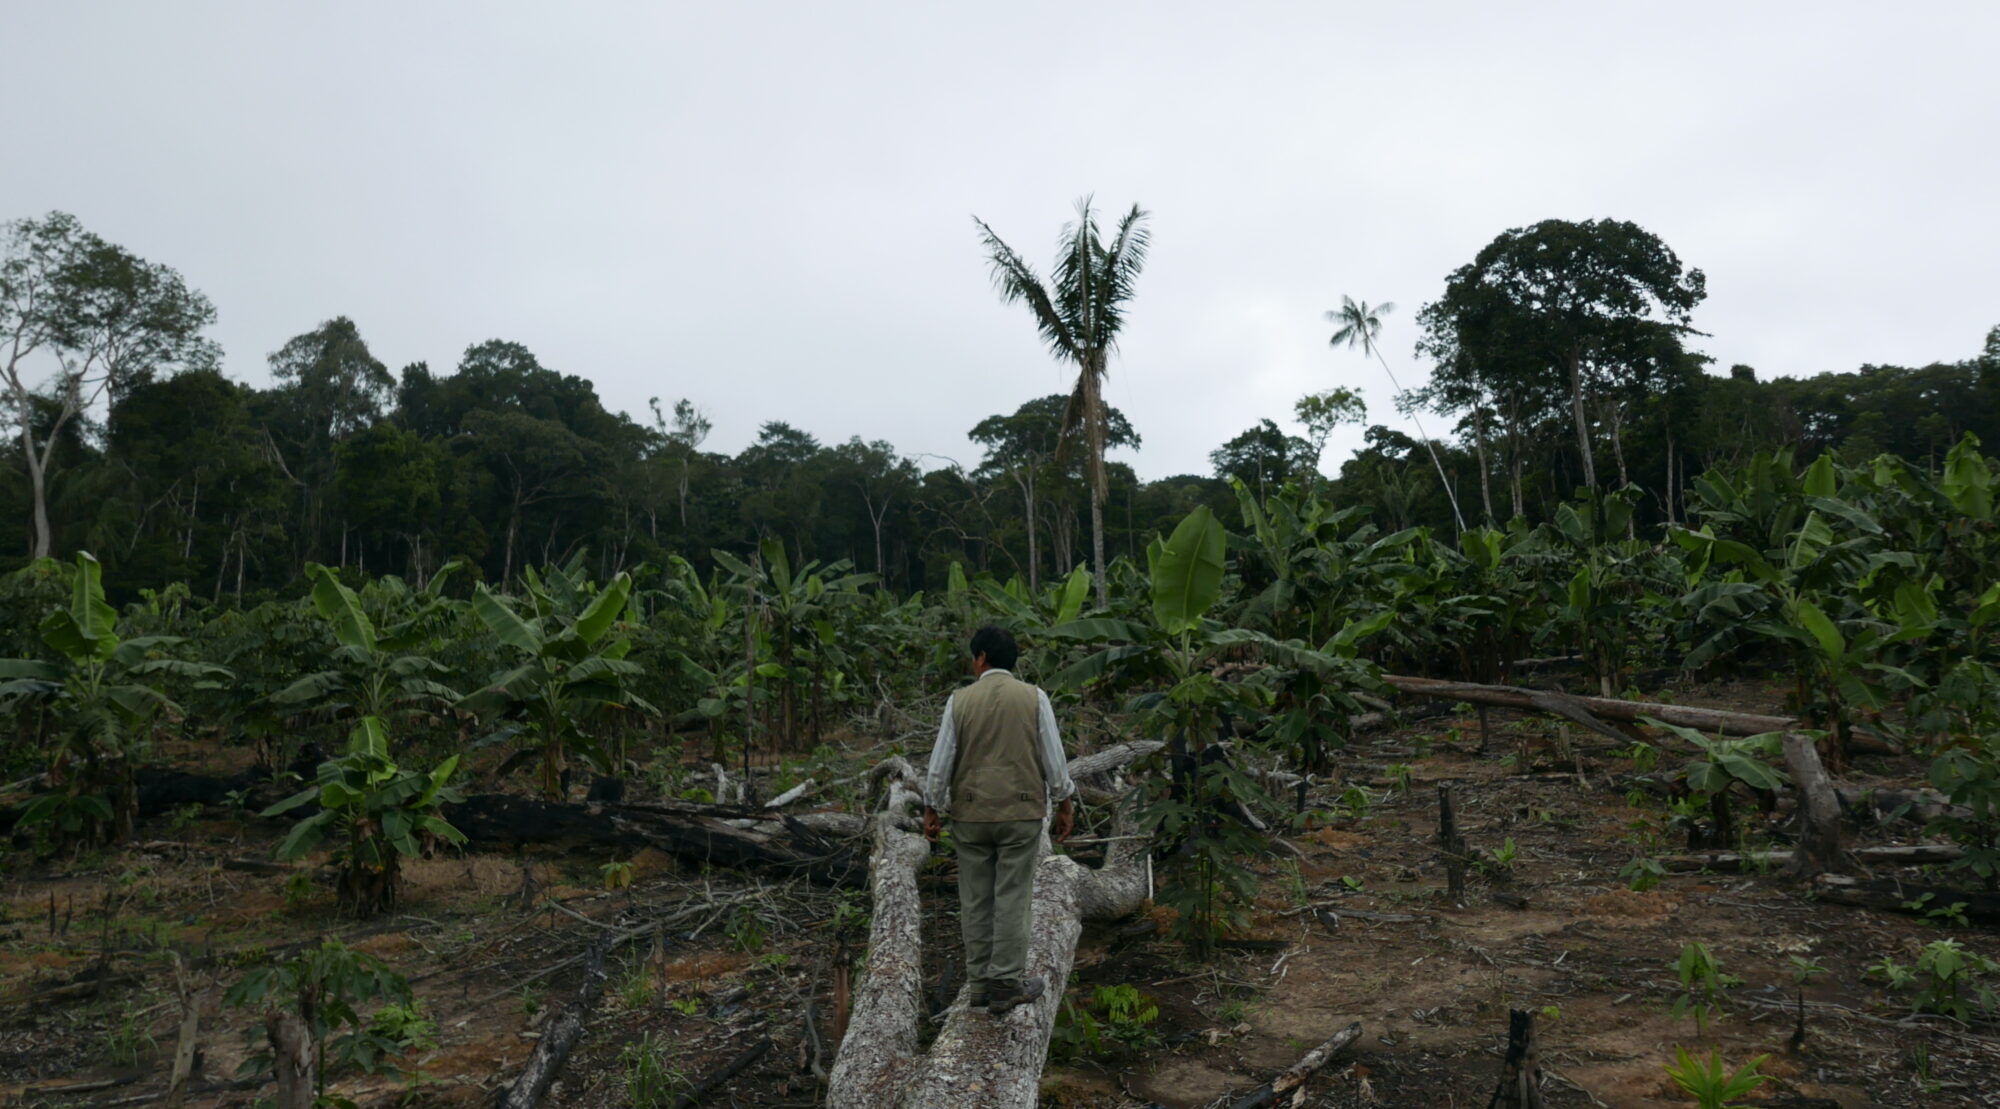 <p>Demetrio Pacheco caminha pela concessão florestal em Madre de Dios, Peru, onde seu filho foi assassinado depois de enfrentar quase uma década de ameaças. O Acordo de Escazú poderia aumentar a proteção de ativistas ambientais no Peru, mas o governo ainda não ratificou o mecanismo (Imagem: Jack Lo)</p>